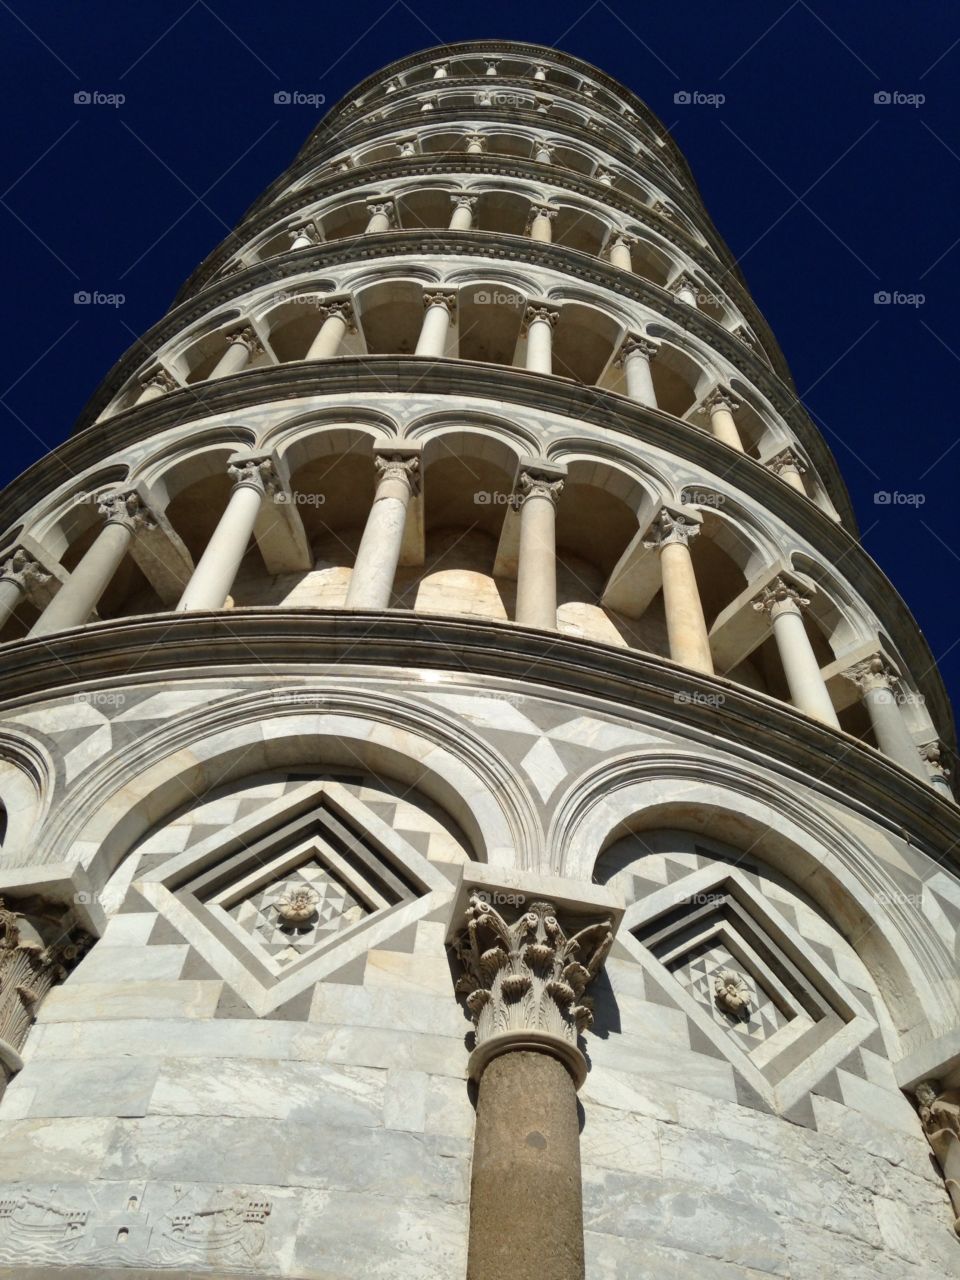 Looking up. Pisa